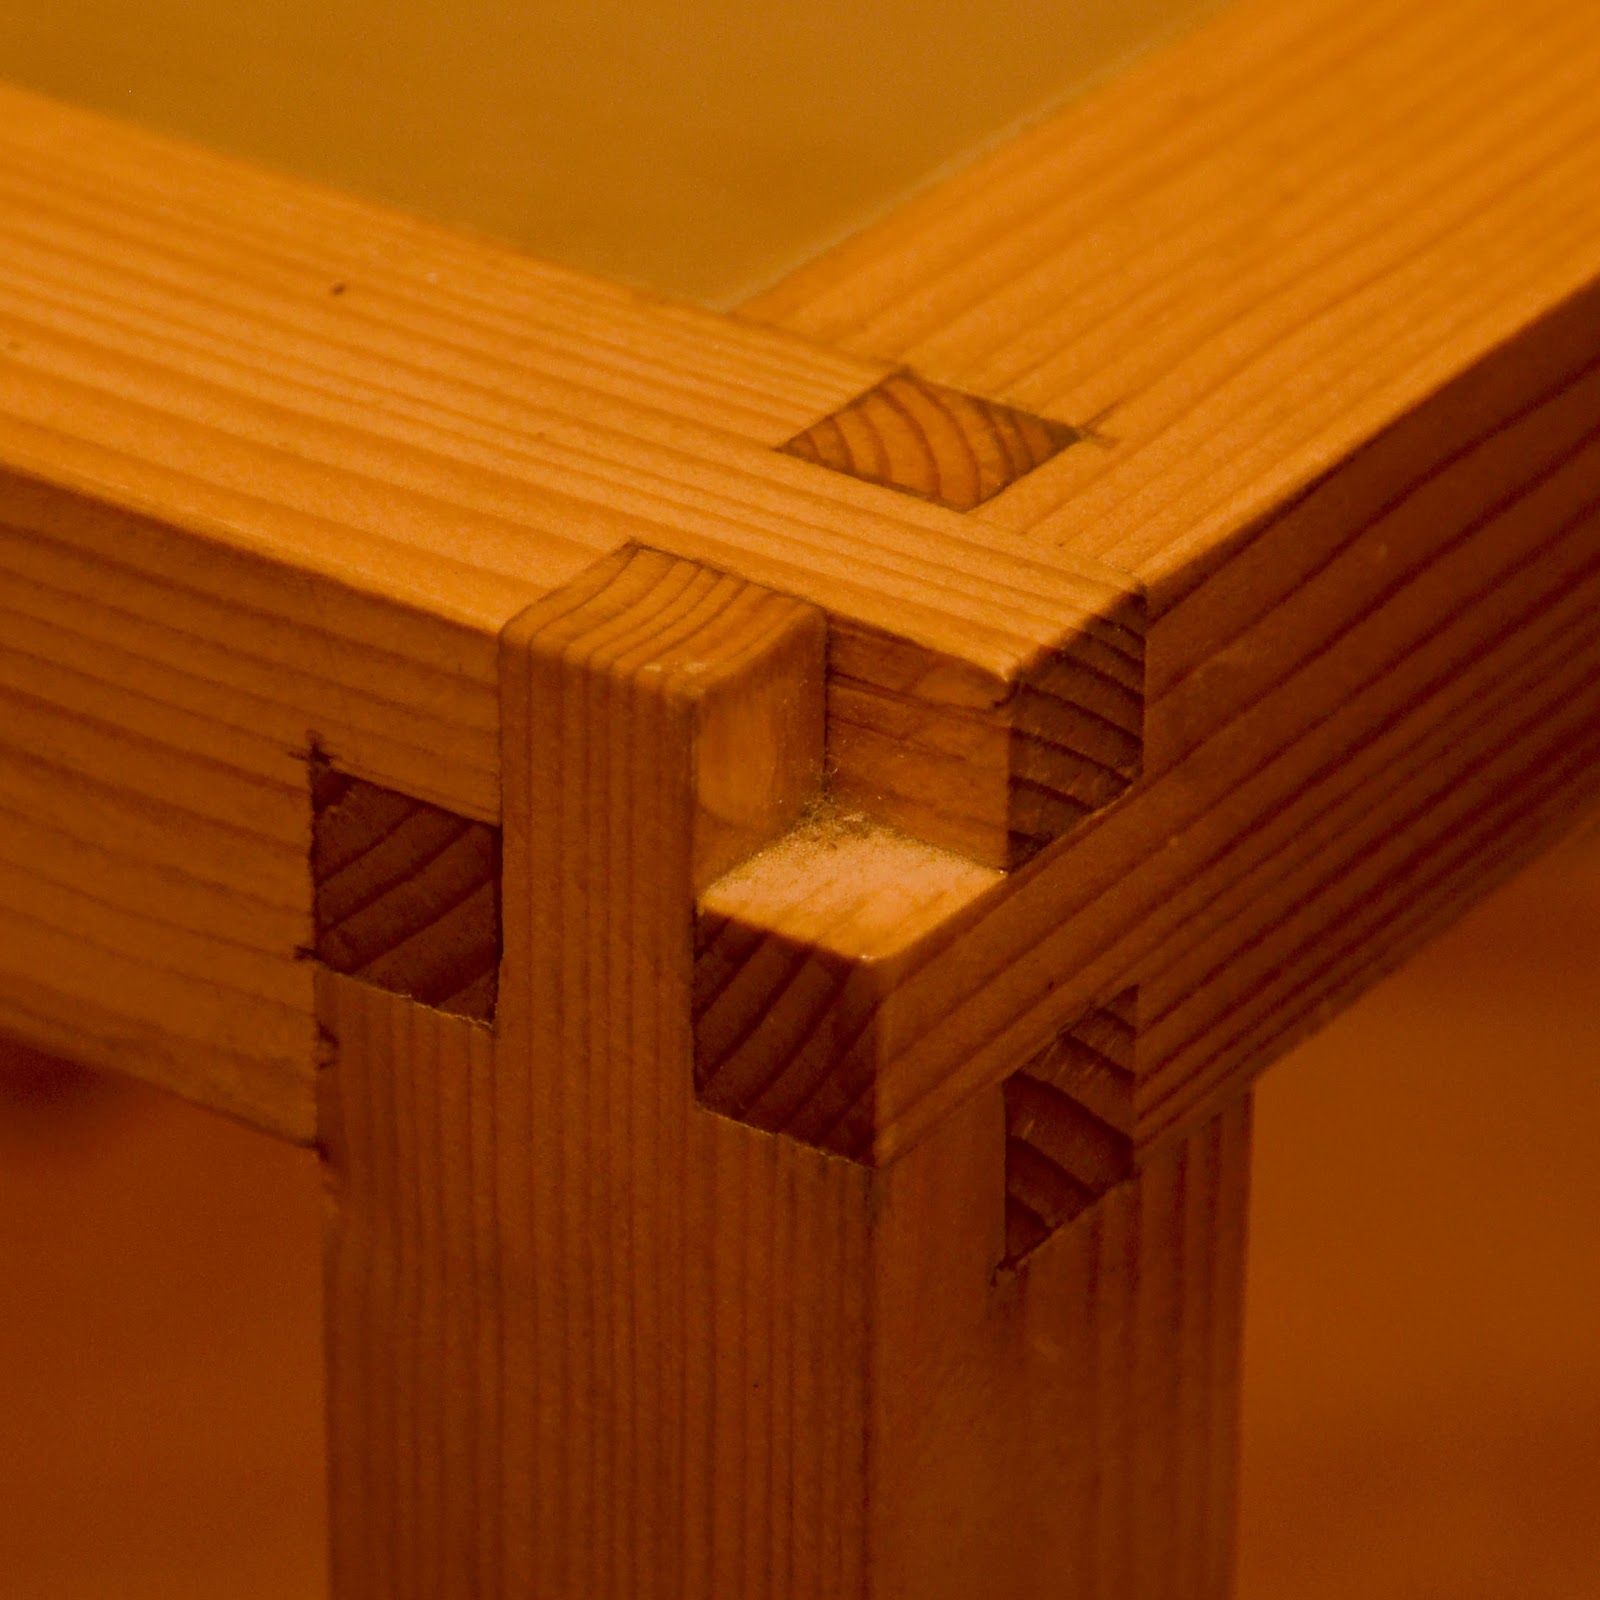 соединения деревянных деталей при изготовлении мебели